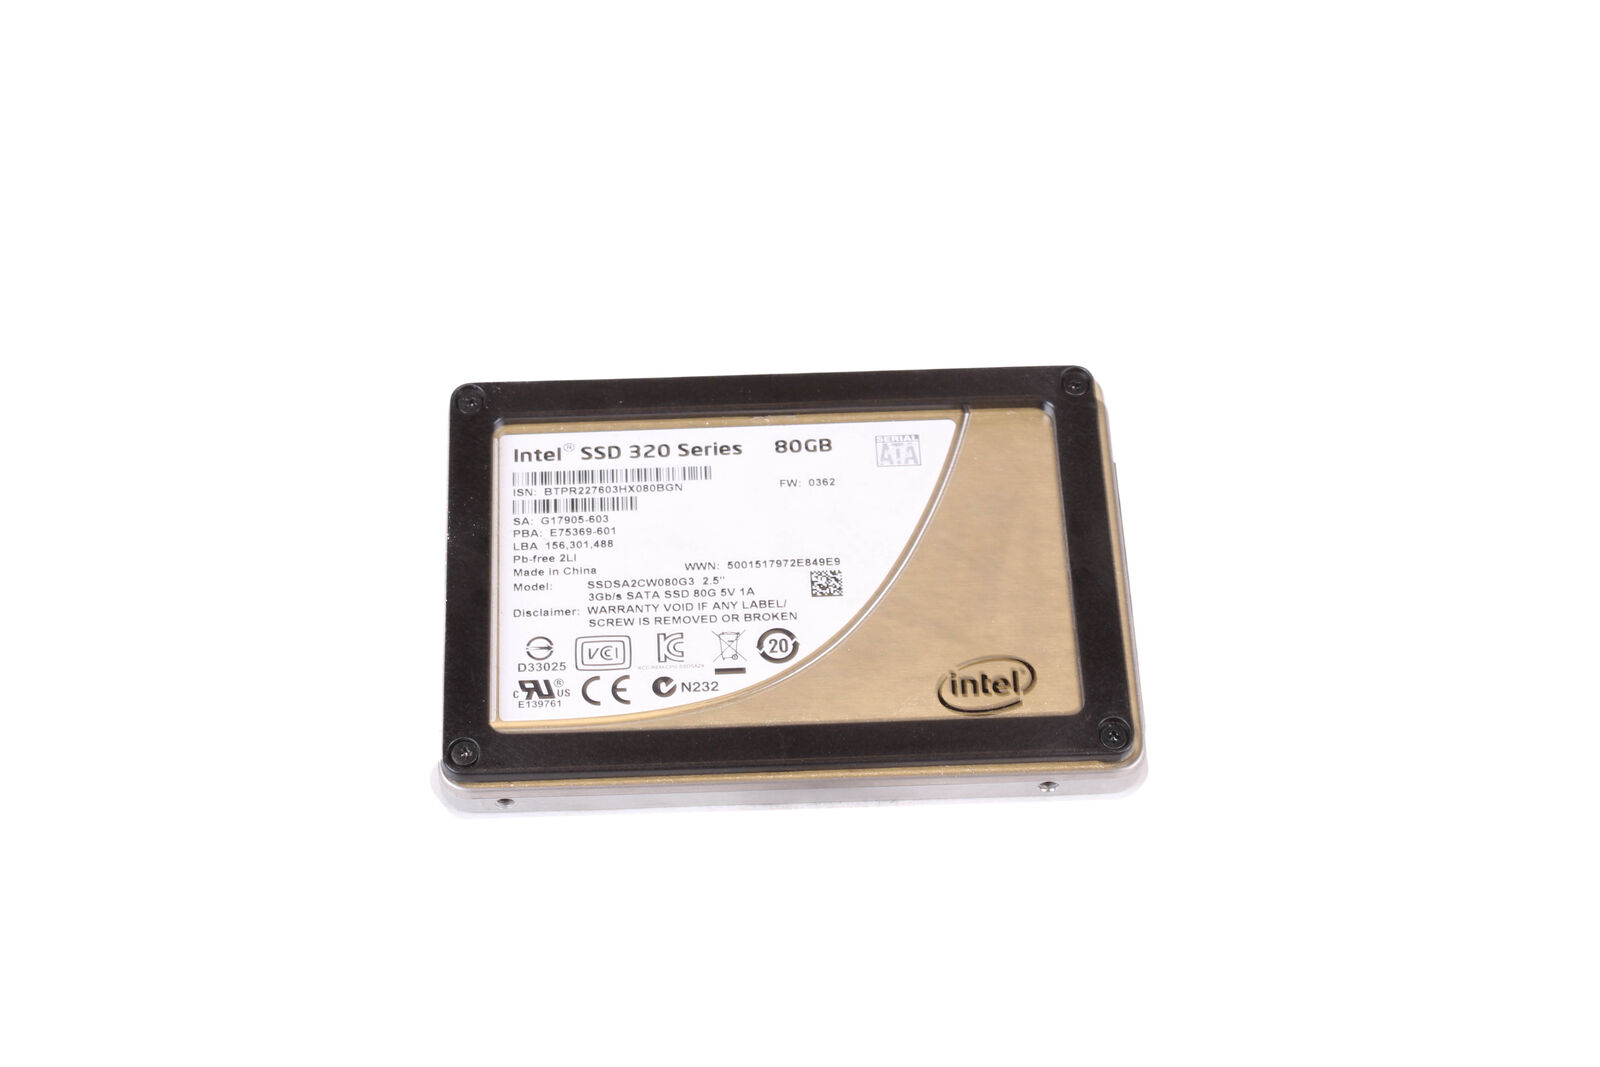 Intel SSDSA2CW080G3 80GB 320 Series SATA SSD